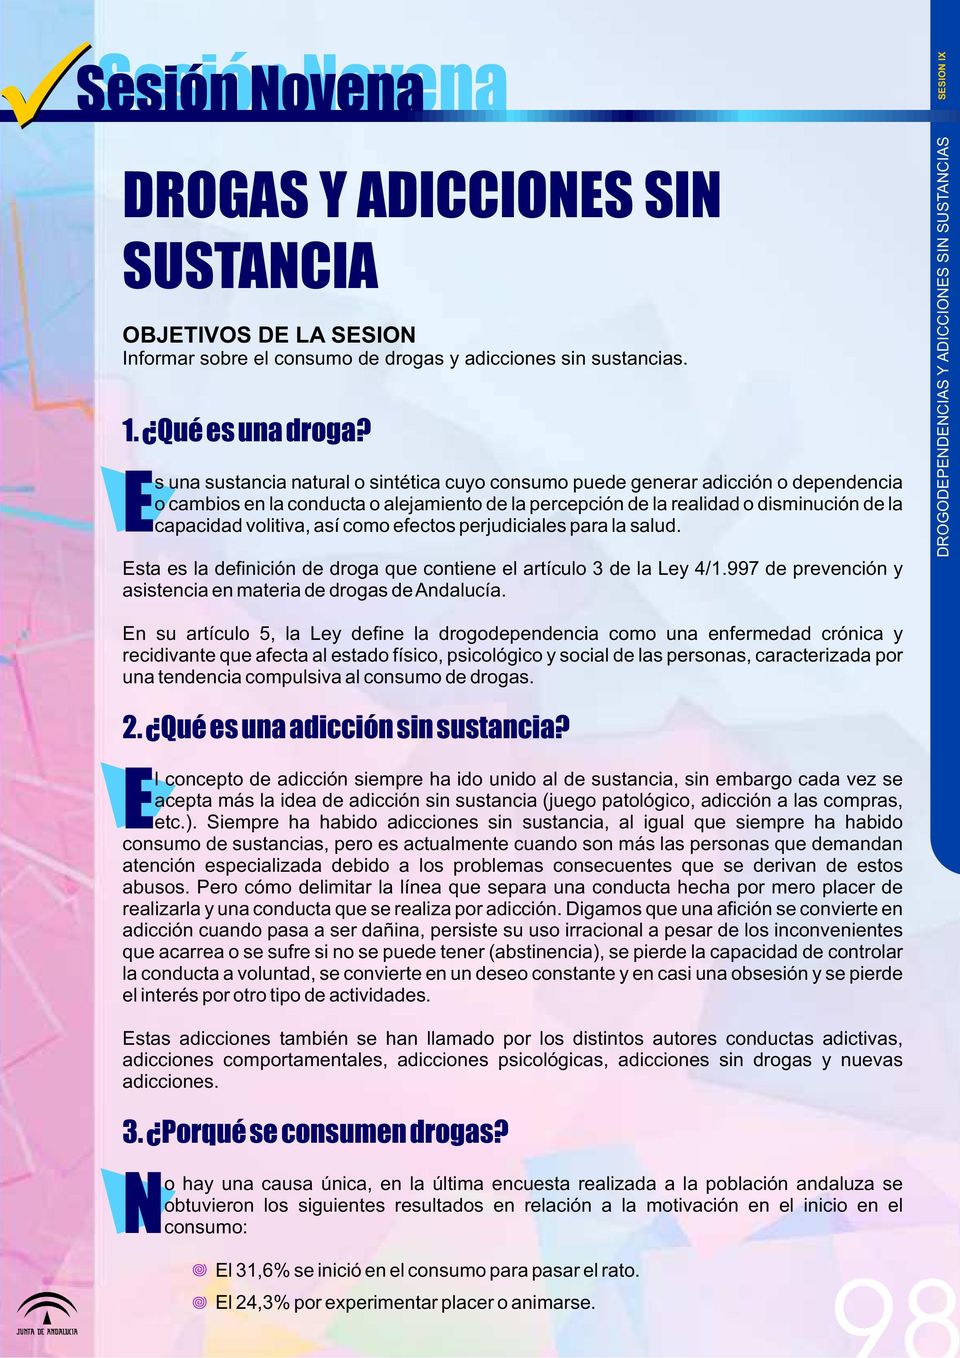 así como efectos perjudiciales para la salud. sta es la definición de droga que contiene el artículo 3 de la Ley 4/1.997 de prevención y asistencia en materia de drogas de Andalucía.